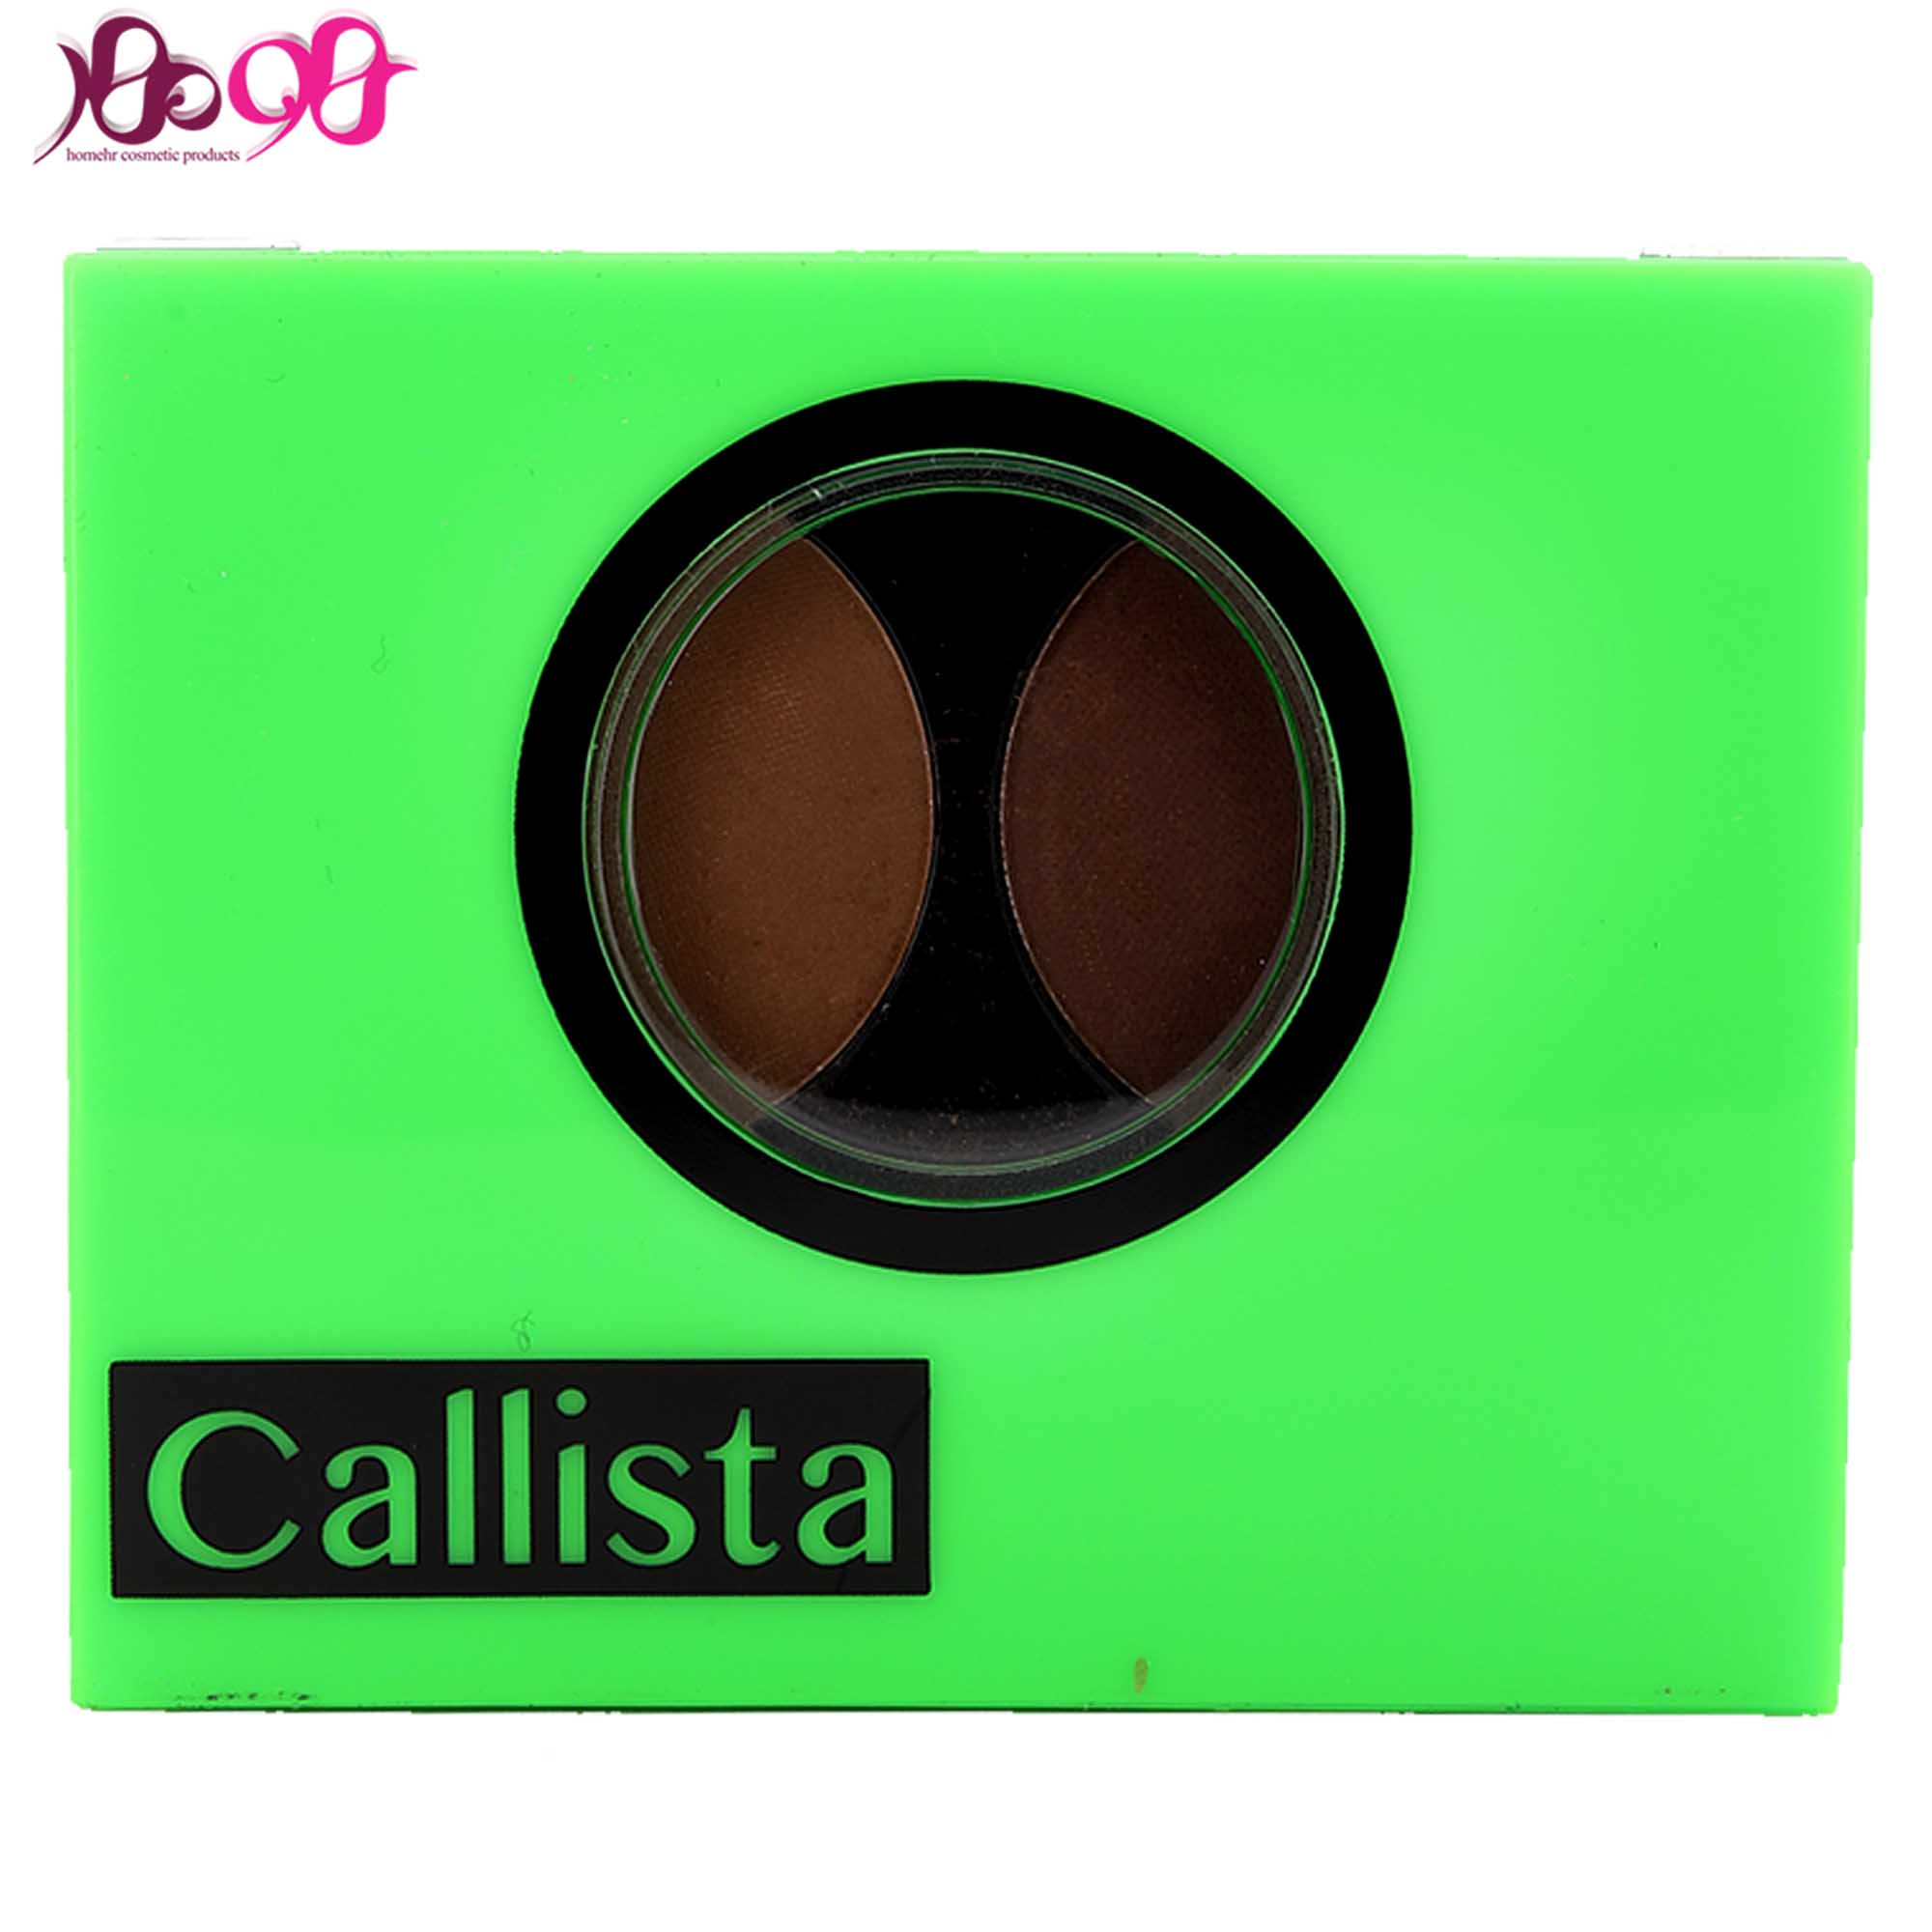 سایه-ابرو-دوتایی-کالیستا-شماره-eb02-حجم-25-گرم-calista